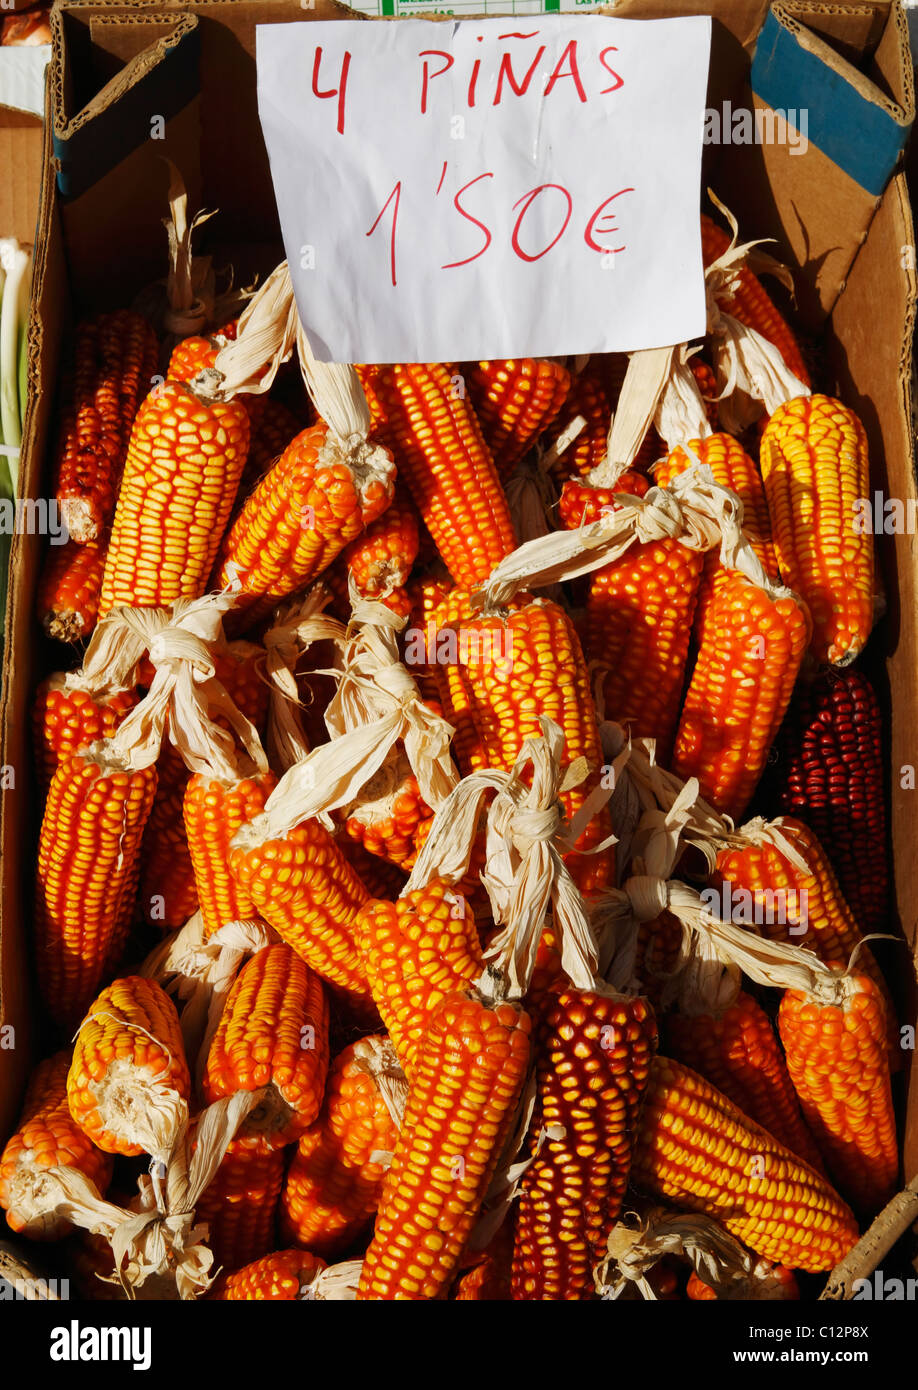 Box mit Maiskolben am Marktstand in Spanien. Stockfoto